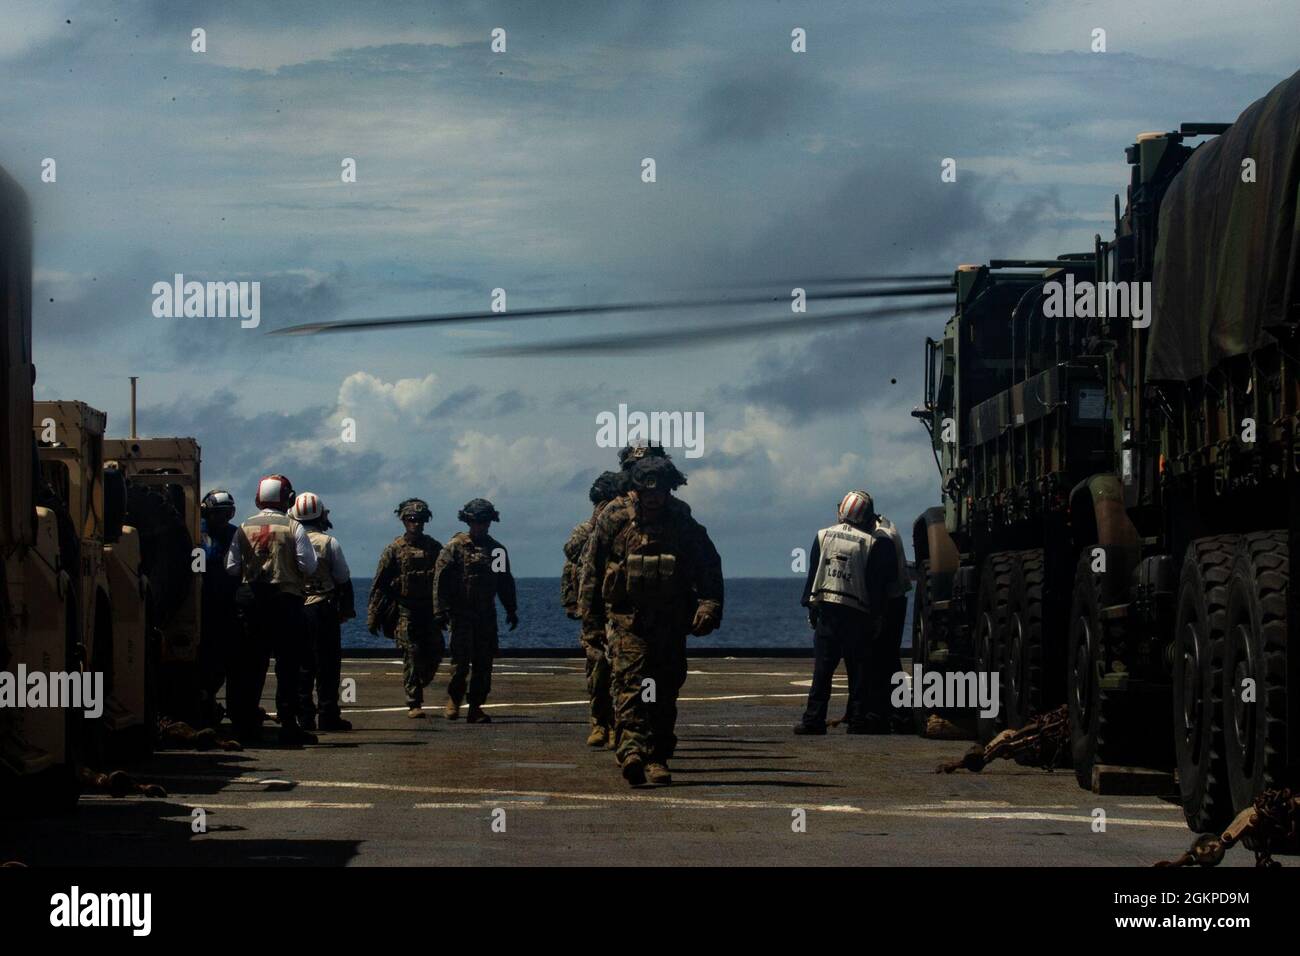 Marines de EE.UU. Con la Unidad Expedicionaria Marina (MEU) de 31st maniobran tácticamente durante el simulacro del Equipo de Asistencia Humanitaria (HAST) a bordo del USS Germantown en el Mar de Filipinas, 12 de junio de 2021. El HAST es el primero en llegar a una zona que necesita asistencia después de una crisis humanitaria o un desastre natural. El MEU de 31st opera a bordo de buques del Grupo Estados Unidos Expeditionary Ready en el área de operaciones de la flota de 7th para mejorar la interoperabilidad con aliados y socios y servir como una fuerza de respuesta lista para defender la paz y la estabilidad en la región de Indo-Pacífico. Foto de stock